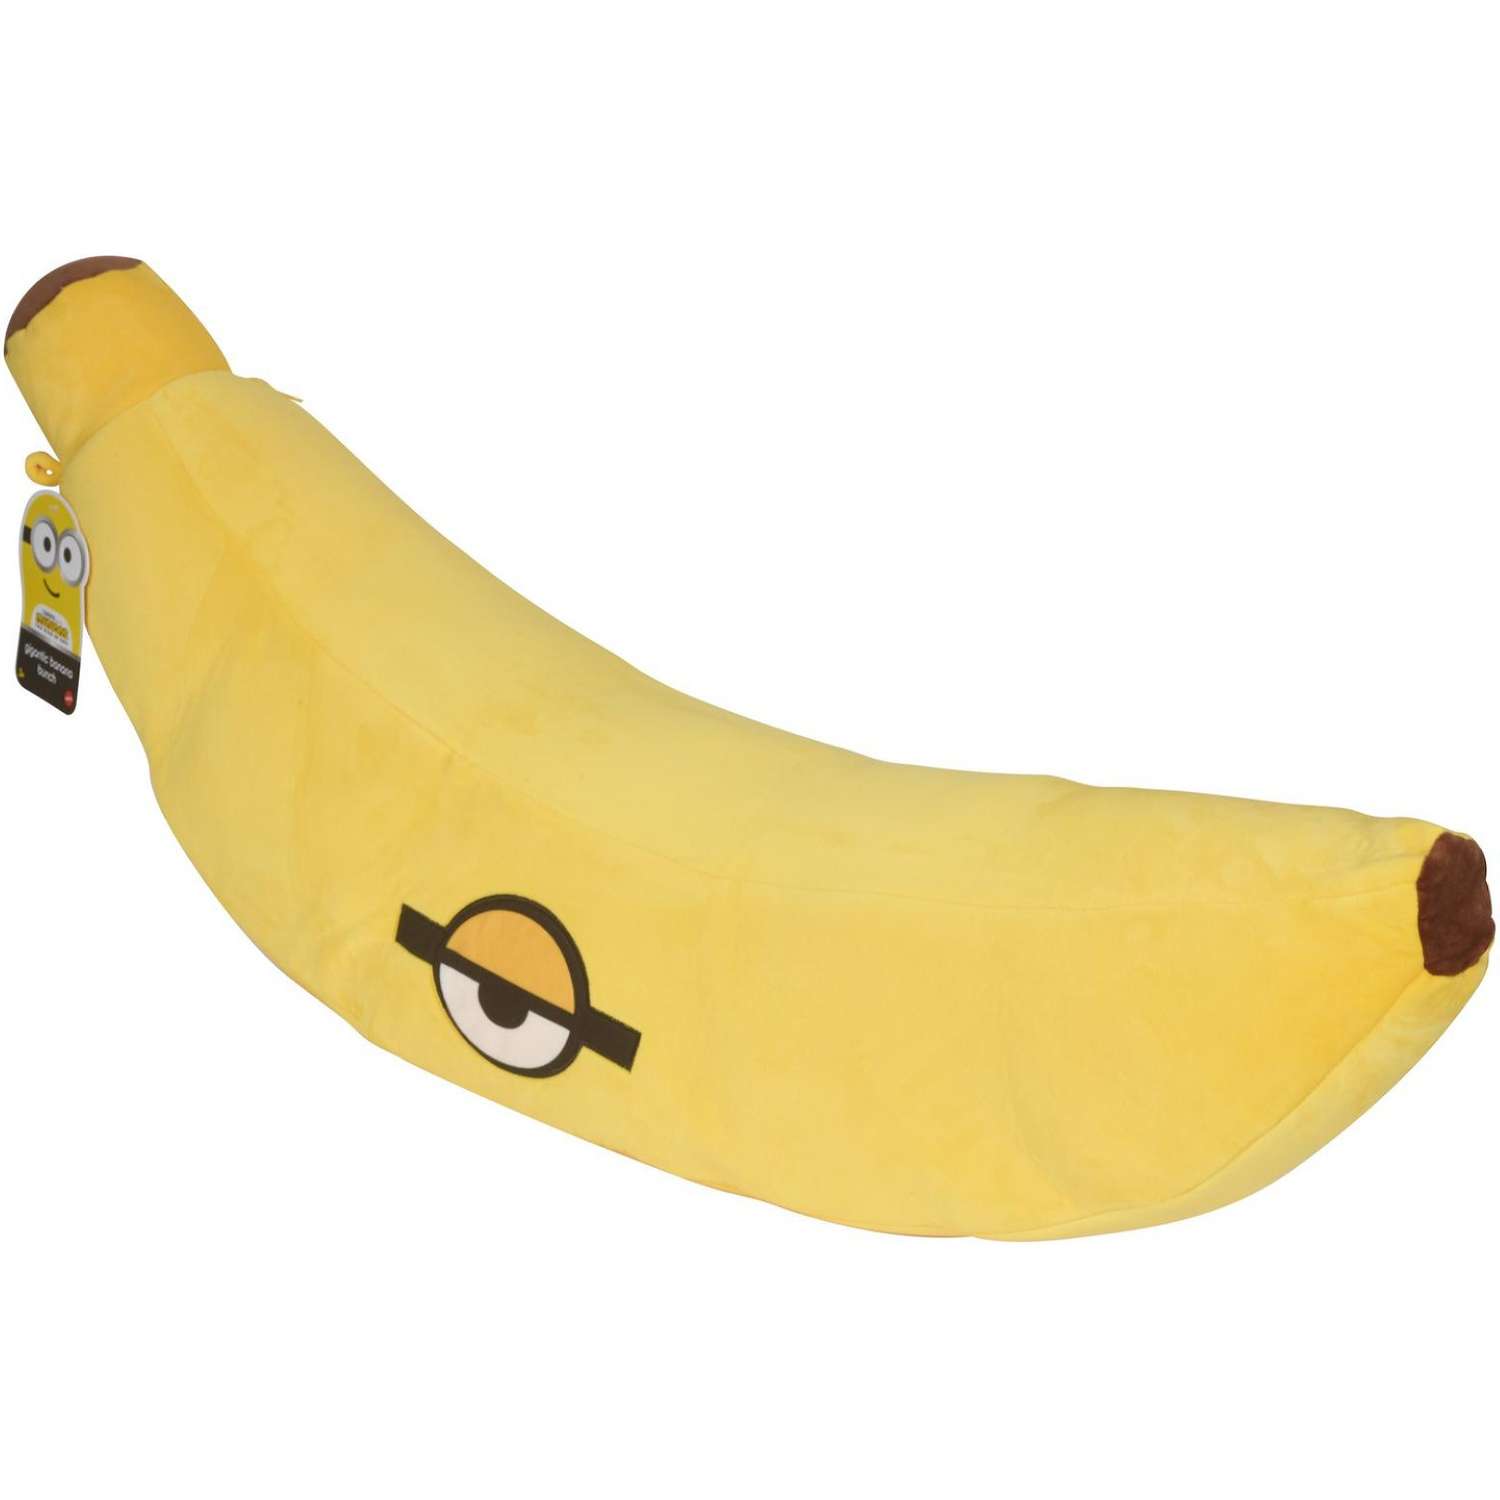 Игрушка мягкая Minions Гигантский банан GMJ66 - фото 2